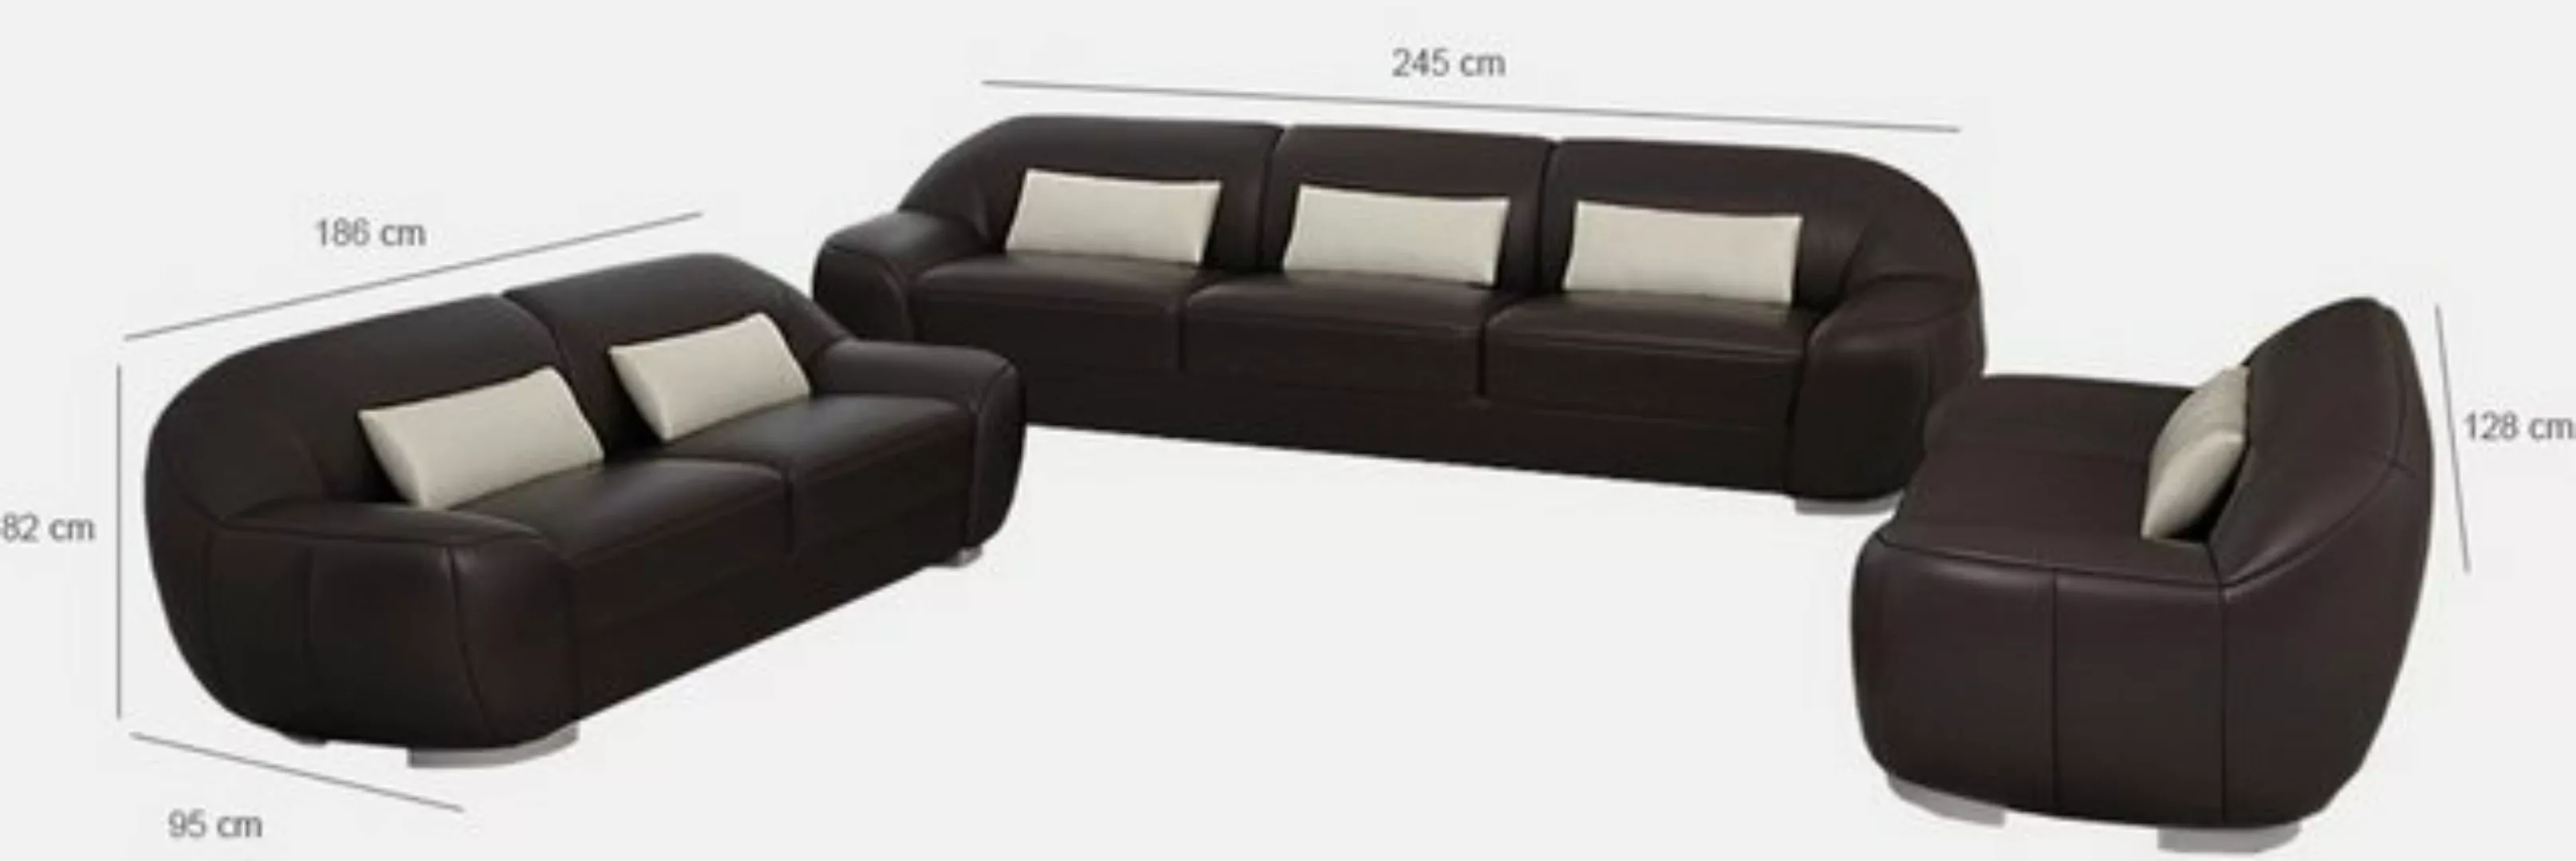 JVmoebel Sofa Sofagarnitur 3+2+1 Couch Polster Sitz Leder Garnitur Möbel Ne günstig online kaufen